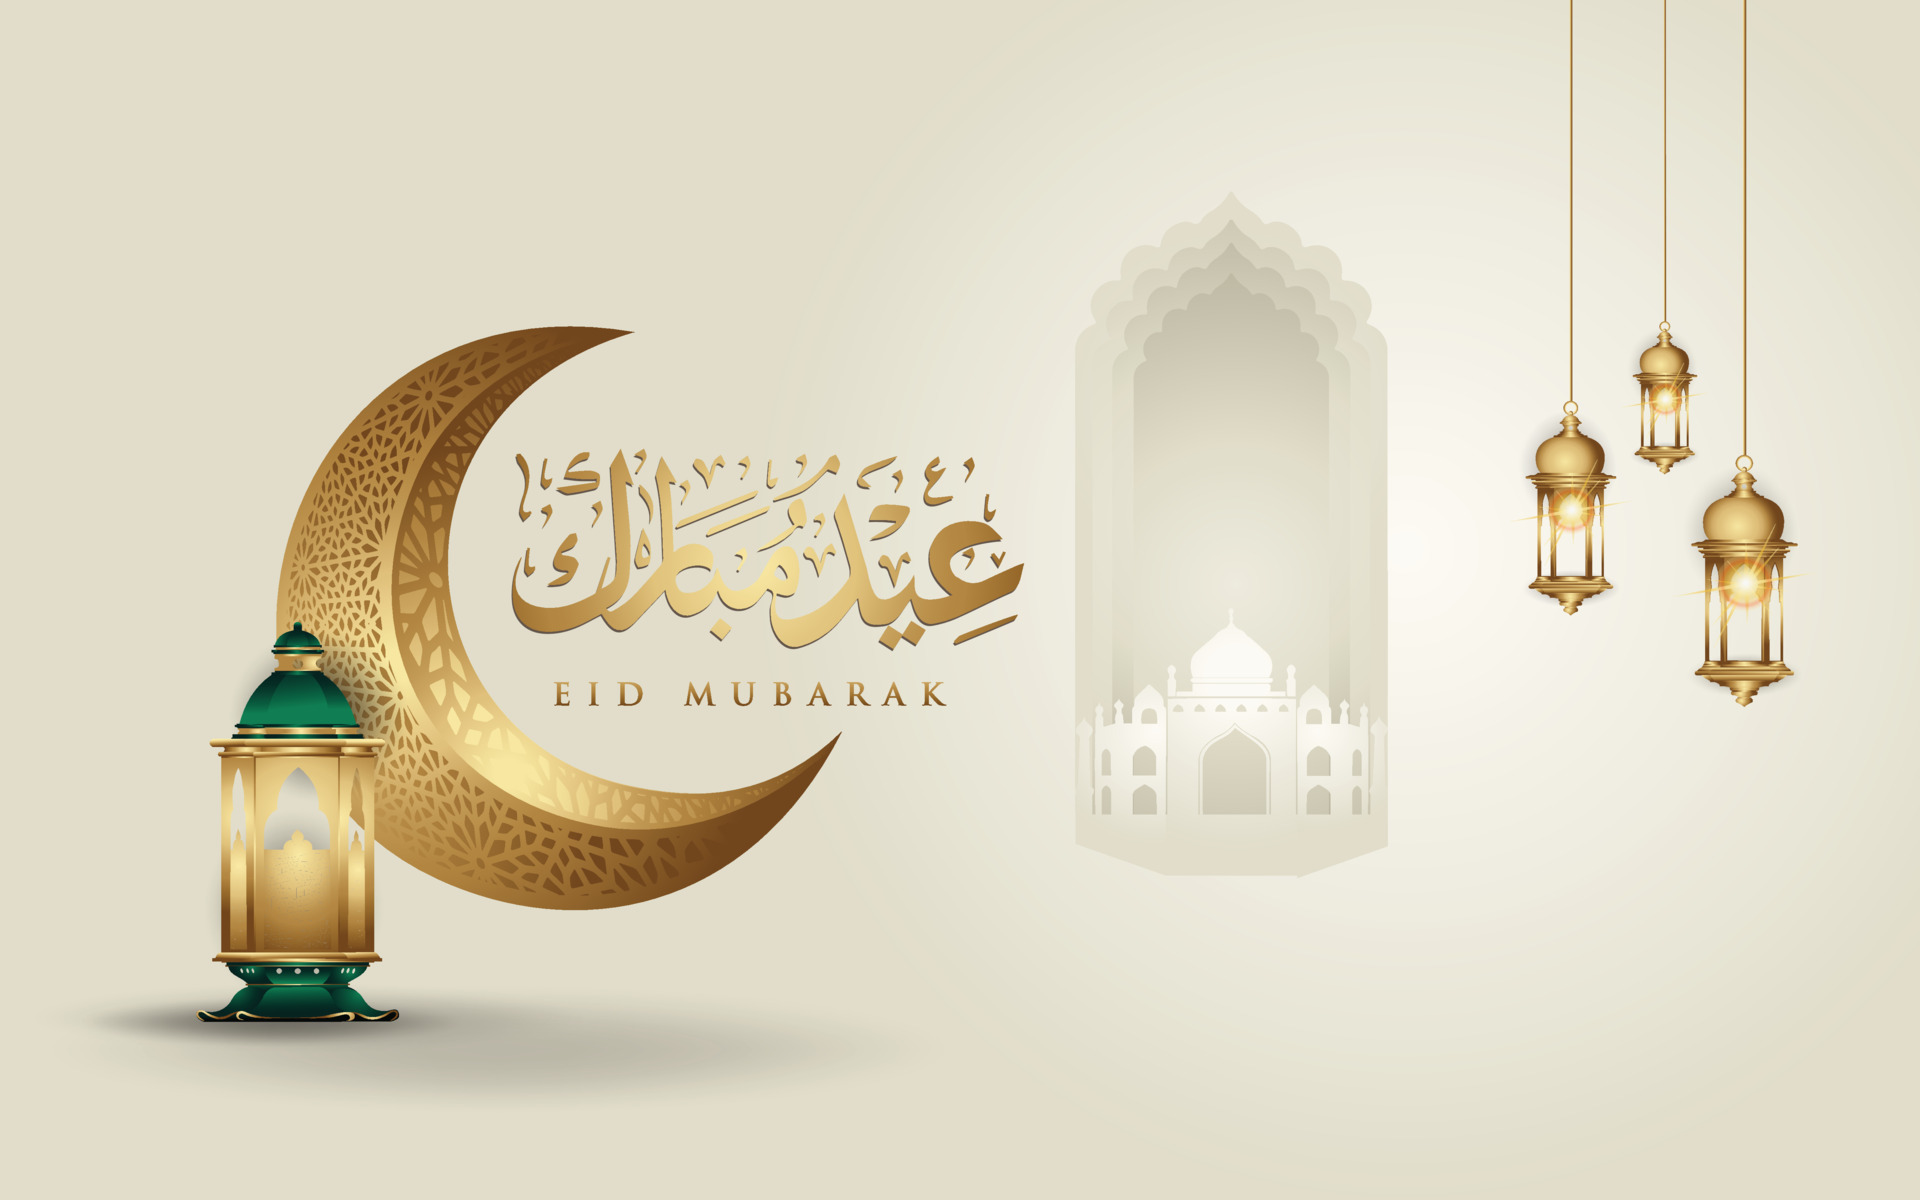 Eid Mubarak: Eid-ul-Fitr Wishes, Greetings and Images